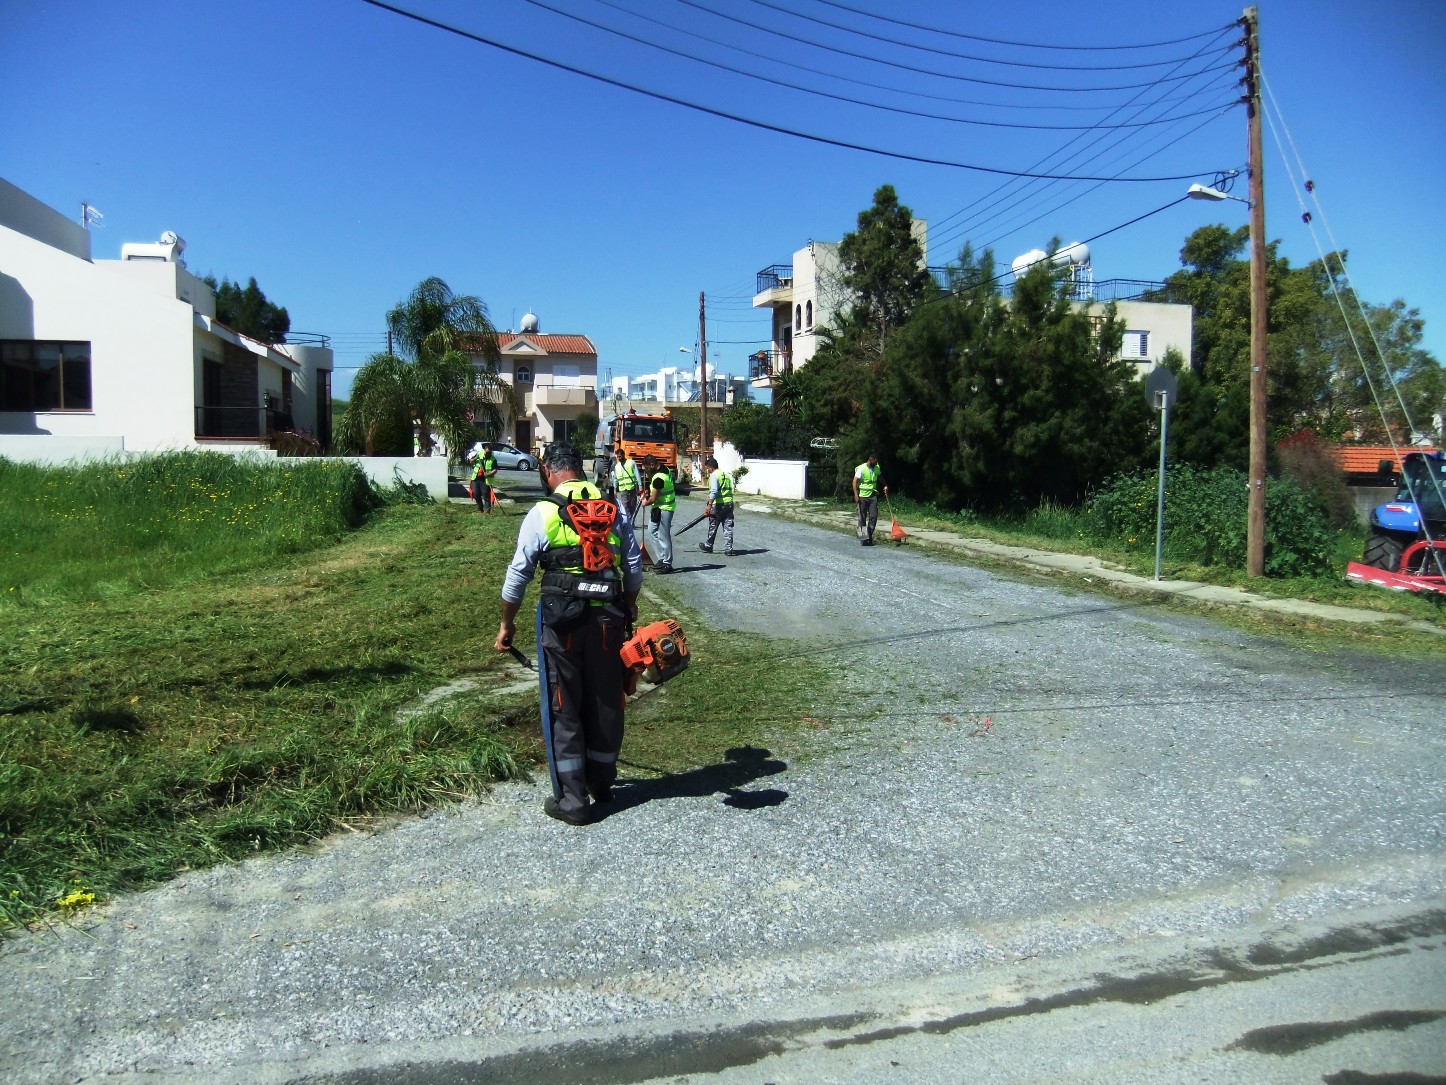 Στην τουρκοκυπριακή Συνοικία Σκάλας, Μακένζι, Καλιφατζιών και Λεωφόρο Φανερωμένης θα βρίσκεται αυτή την εβδομάδα το Τμήμα Καθαριότητας του Δήμου